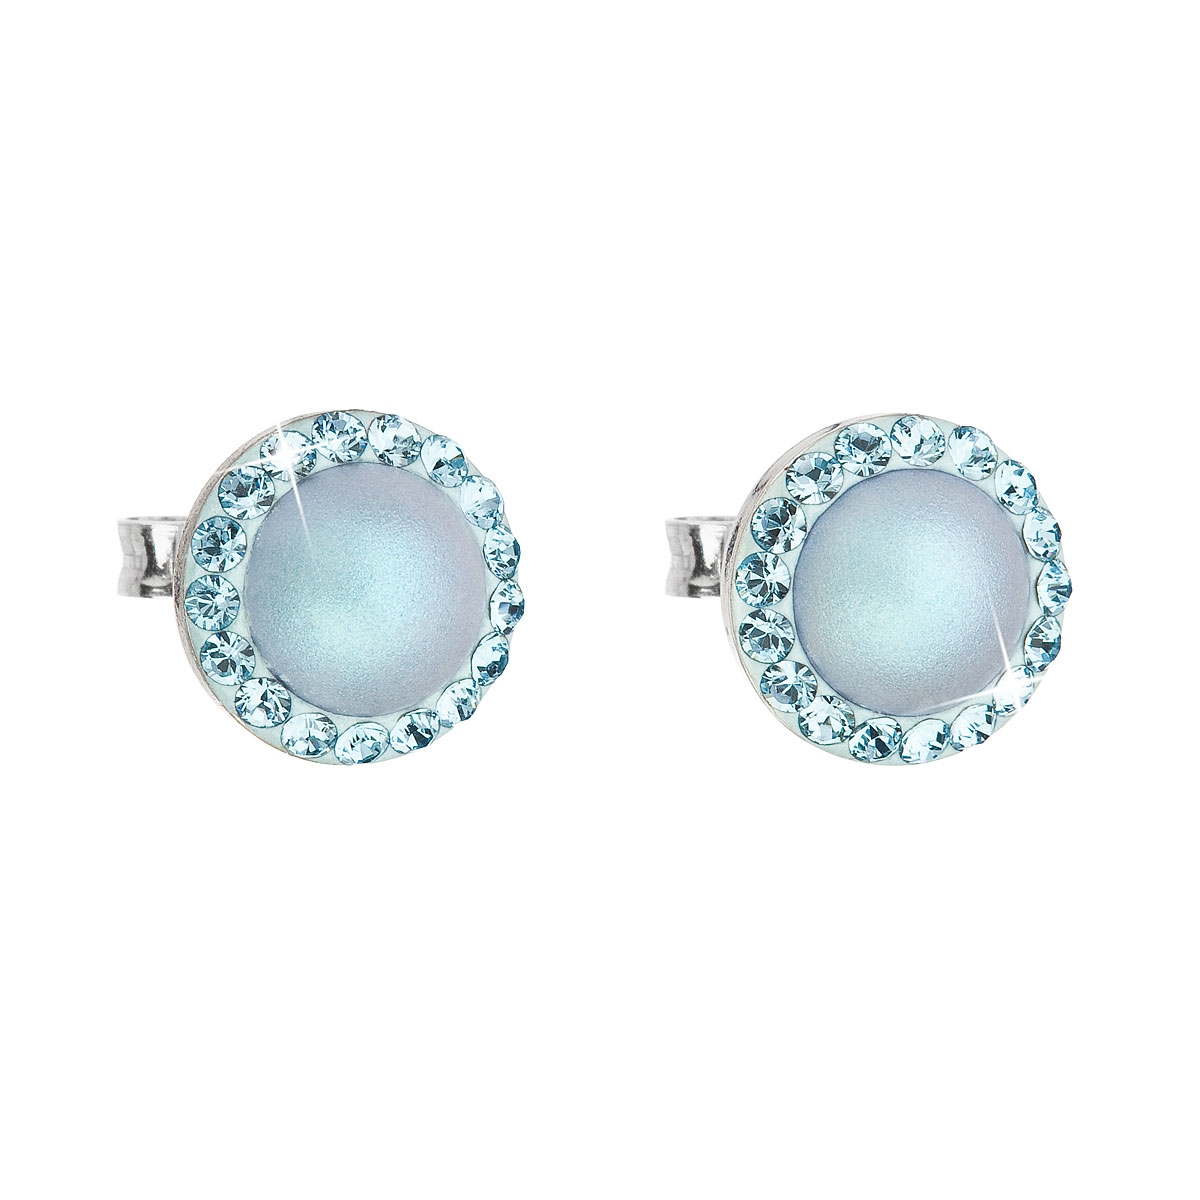 Strieborné náušnice s perlami a kamienkami Crystals from Swarovski ® Aquamarine